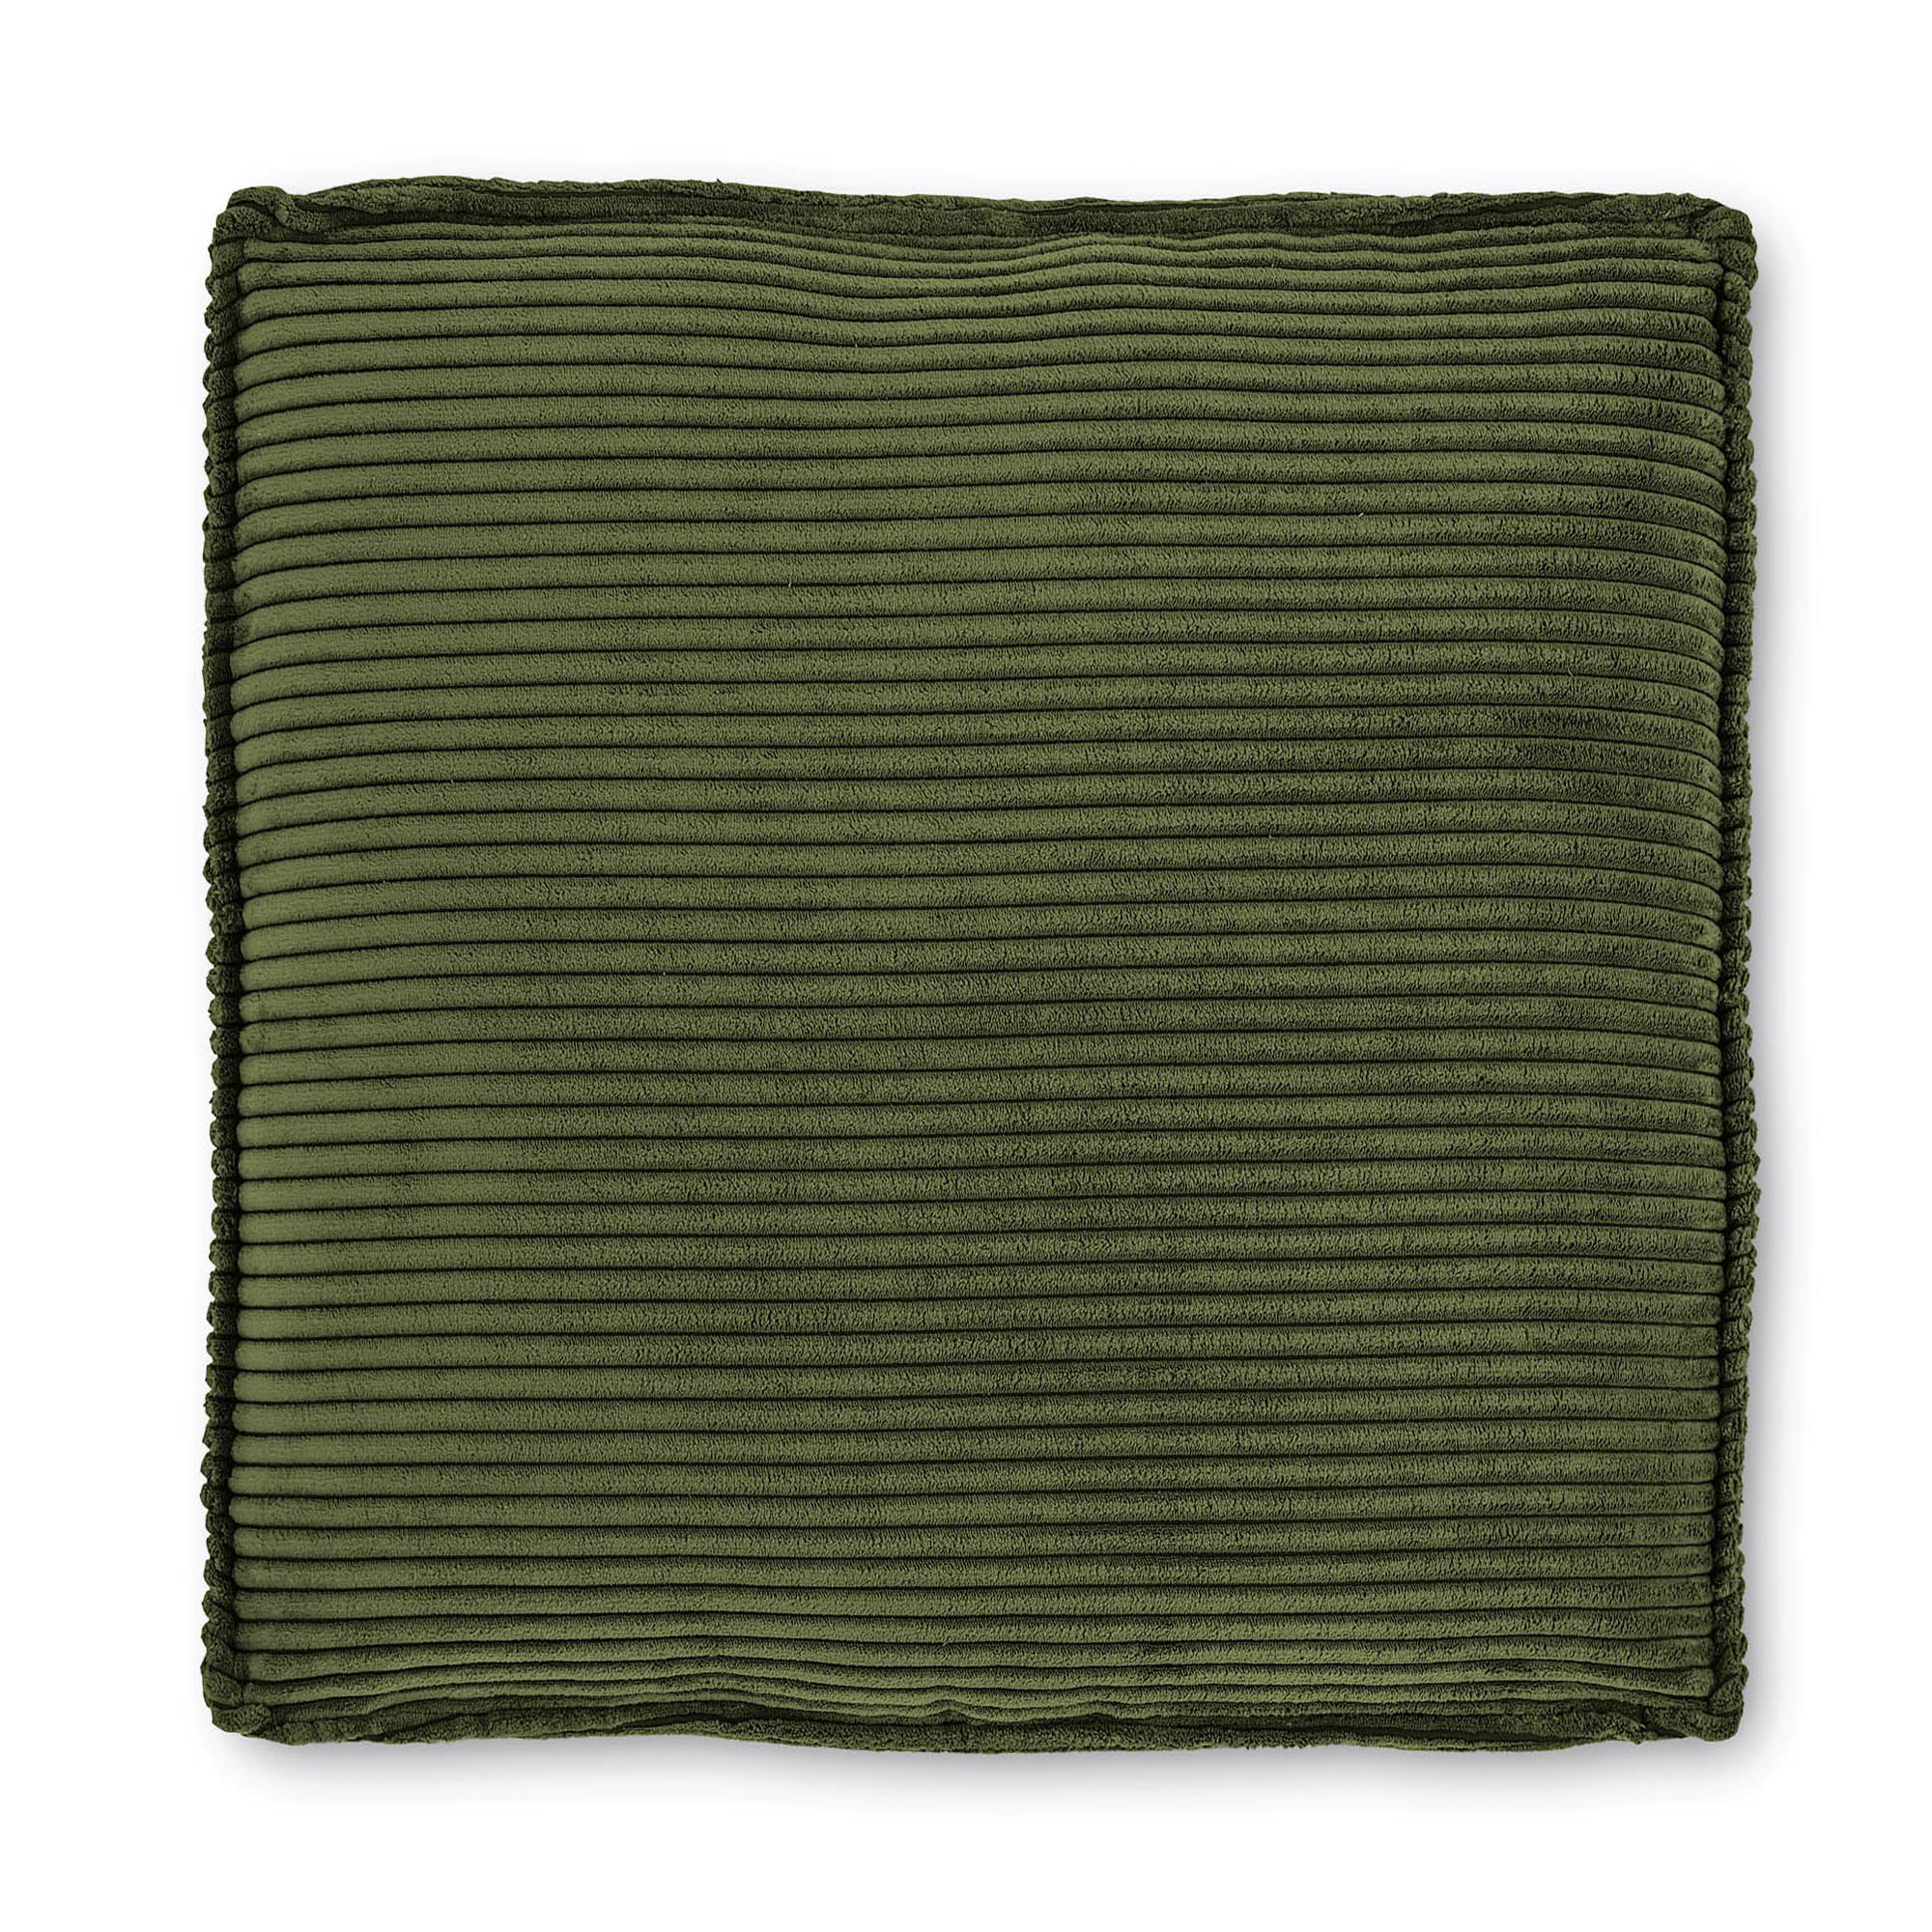 Blok párna, zöld, széles varrású kordbársony, 60 x 60 cm